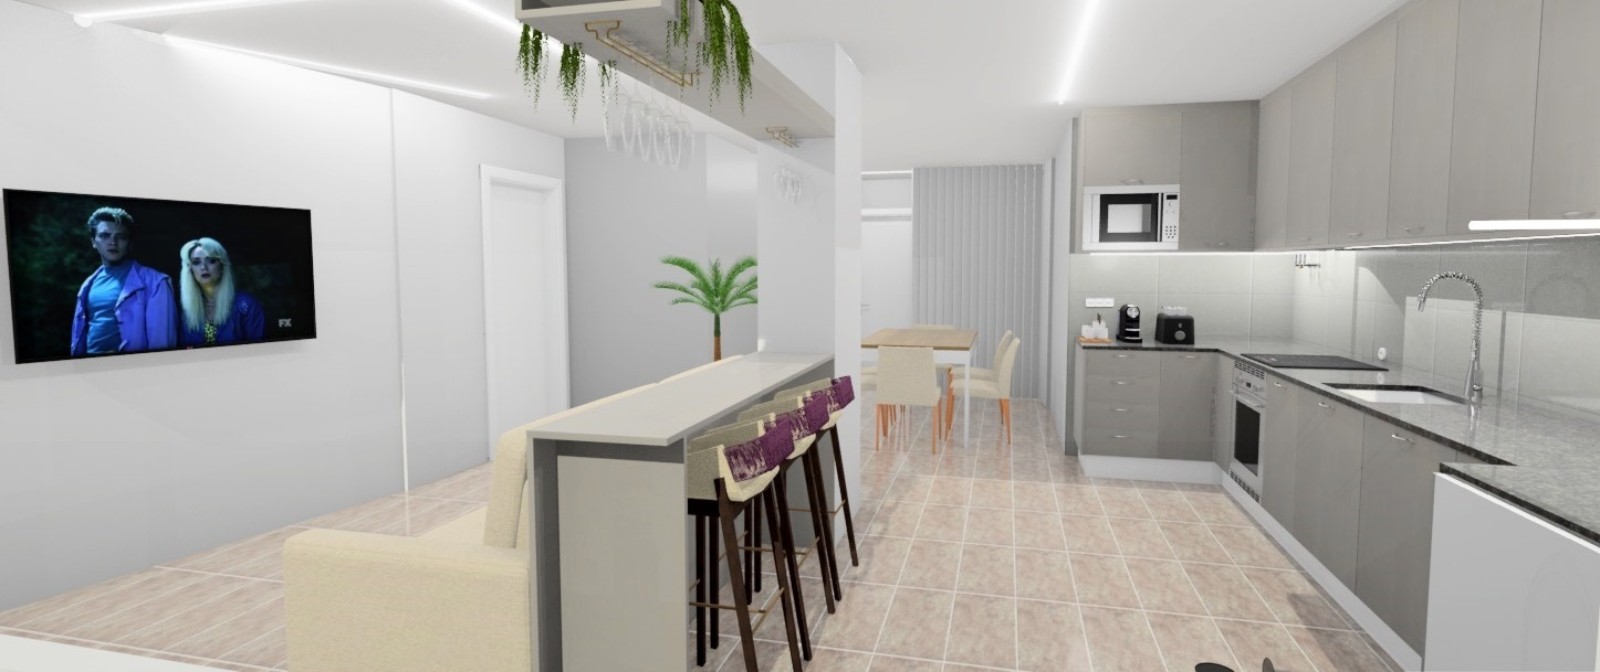 Piso nuevo de 2 dormitorios en venta en Loulé, Algarve_238525